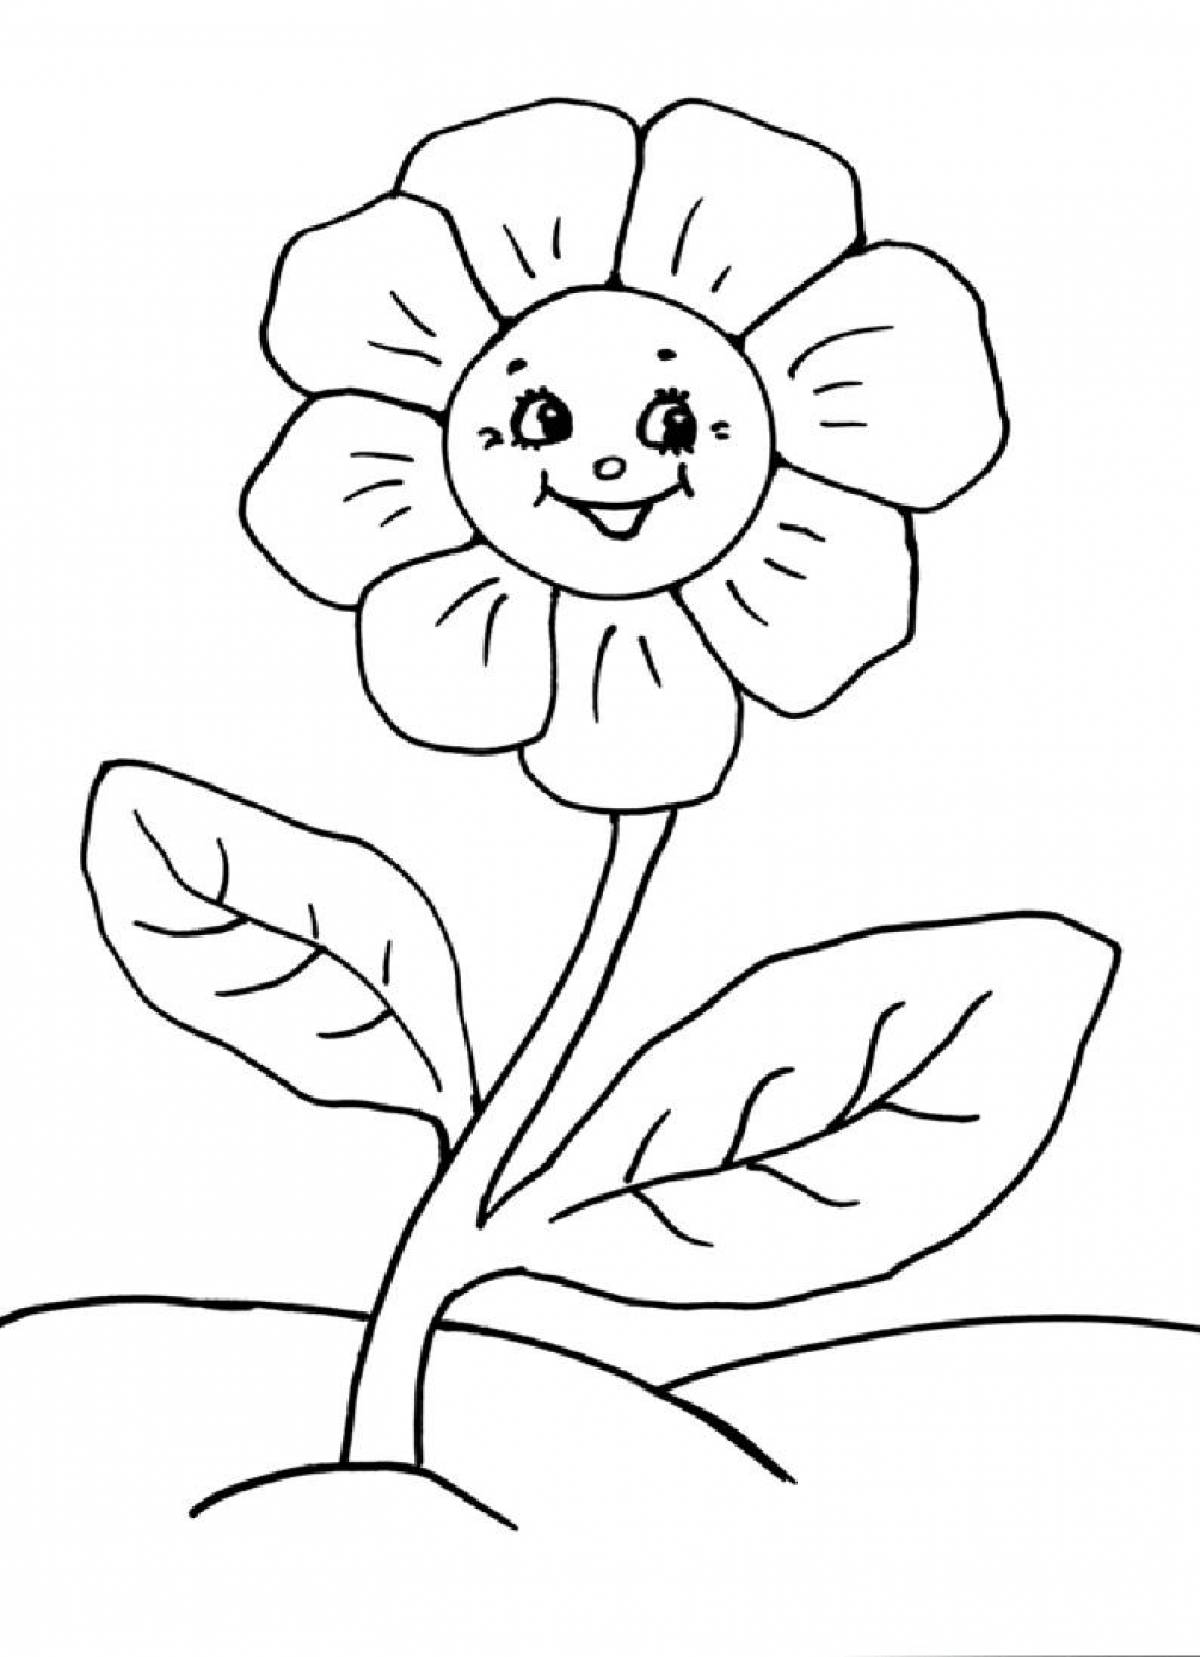 Причудливая раскраска цветок для детей 3-4 лет